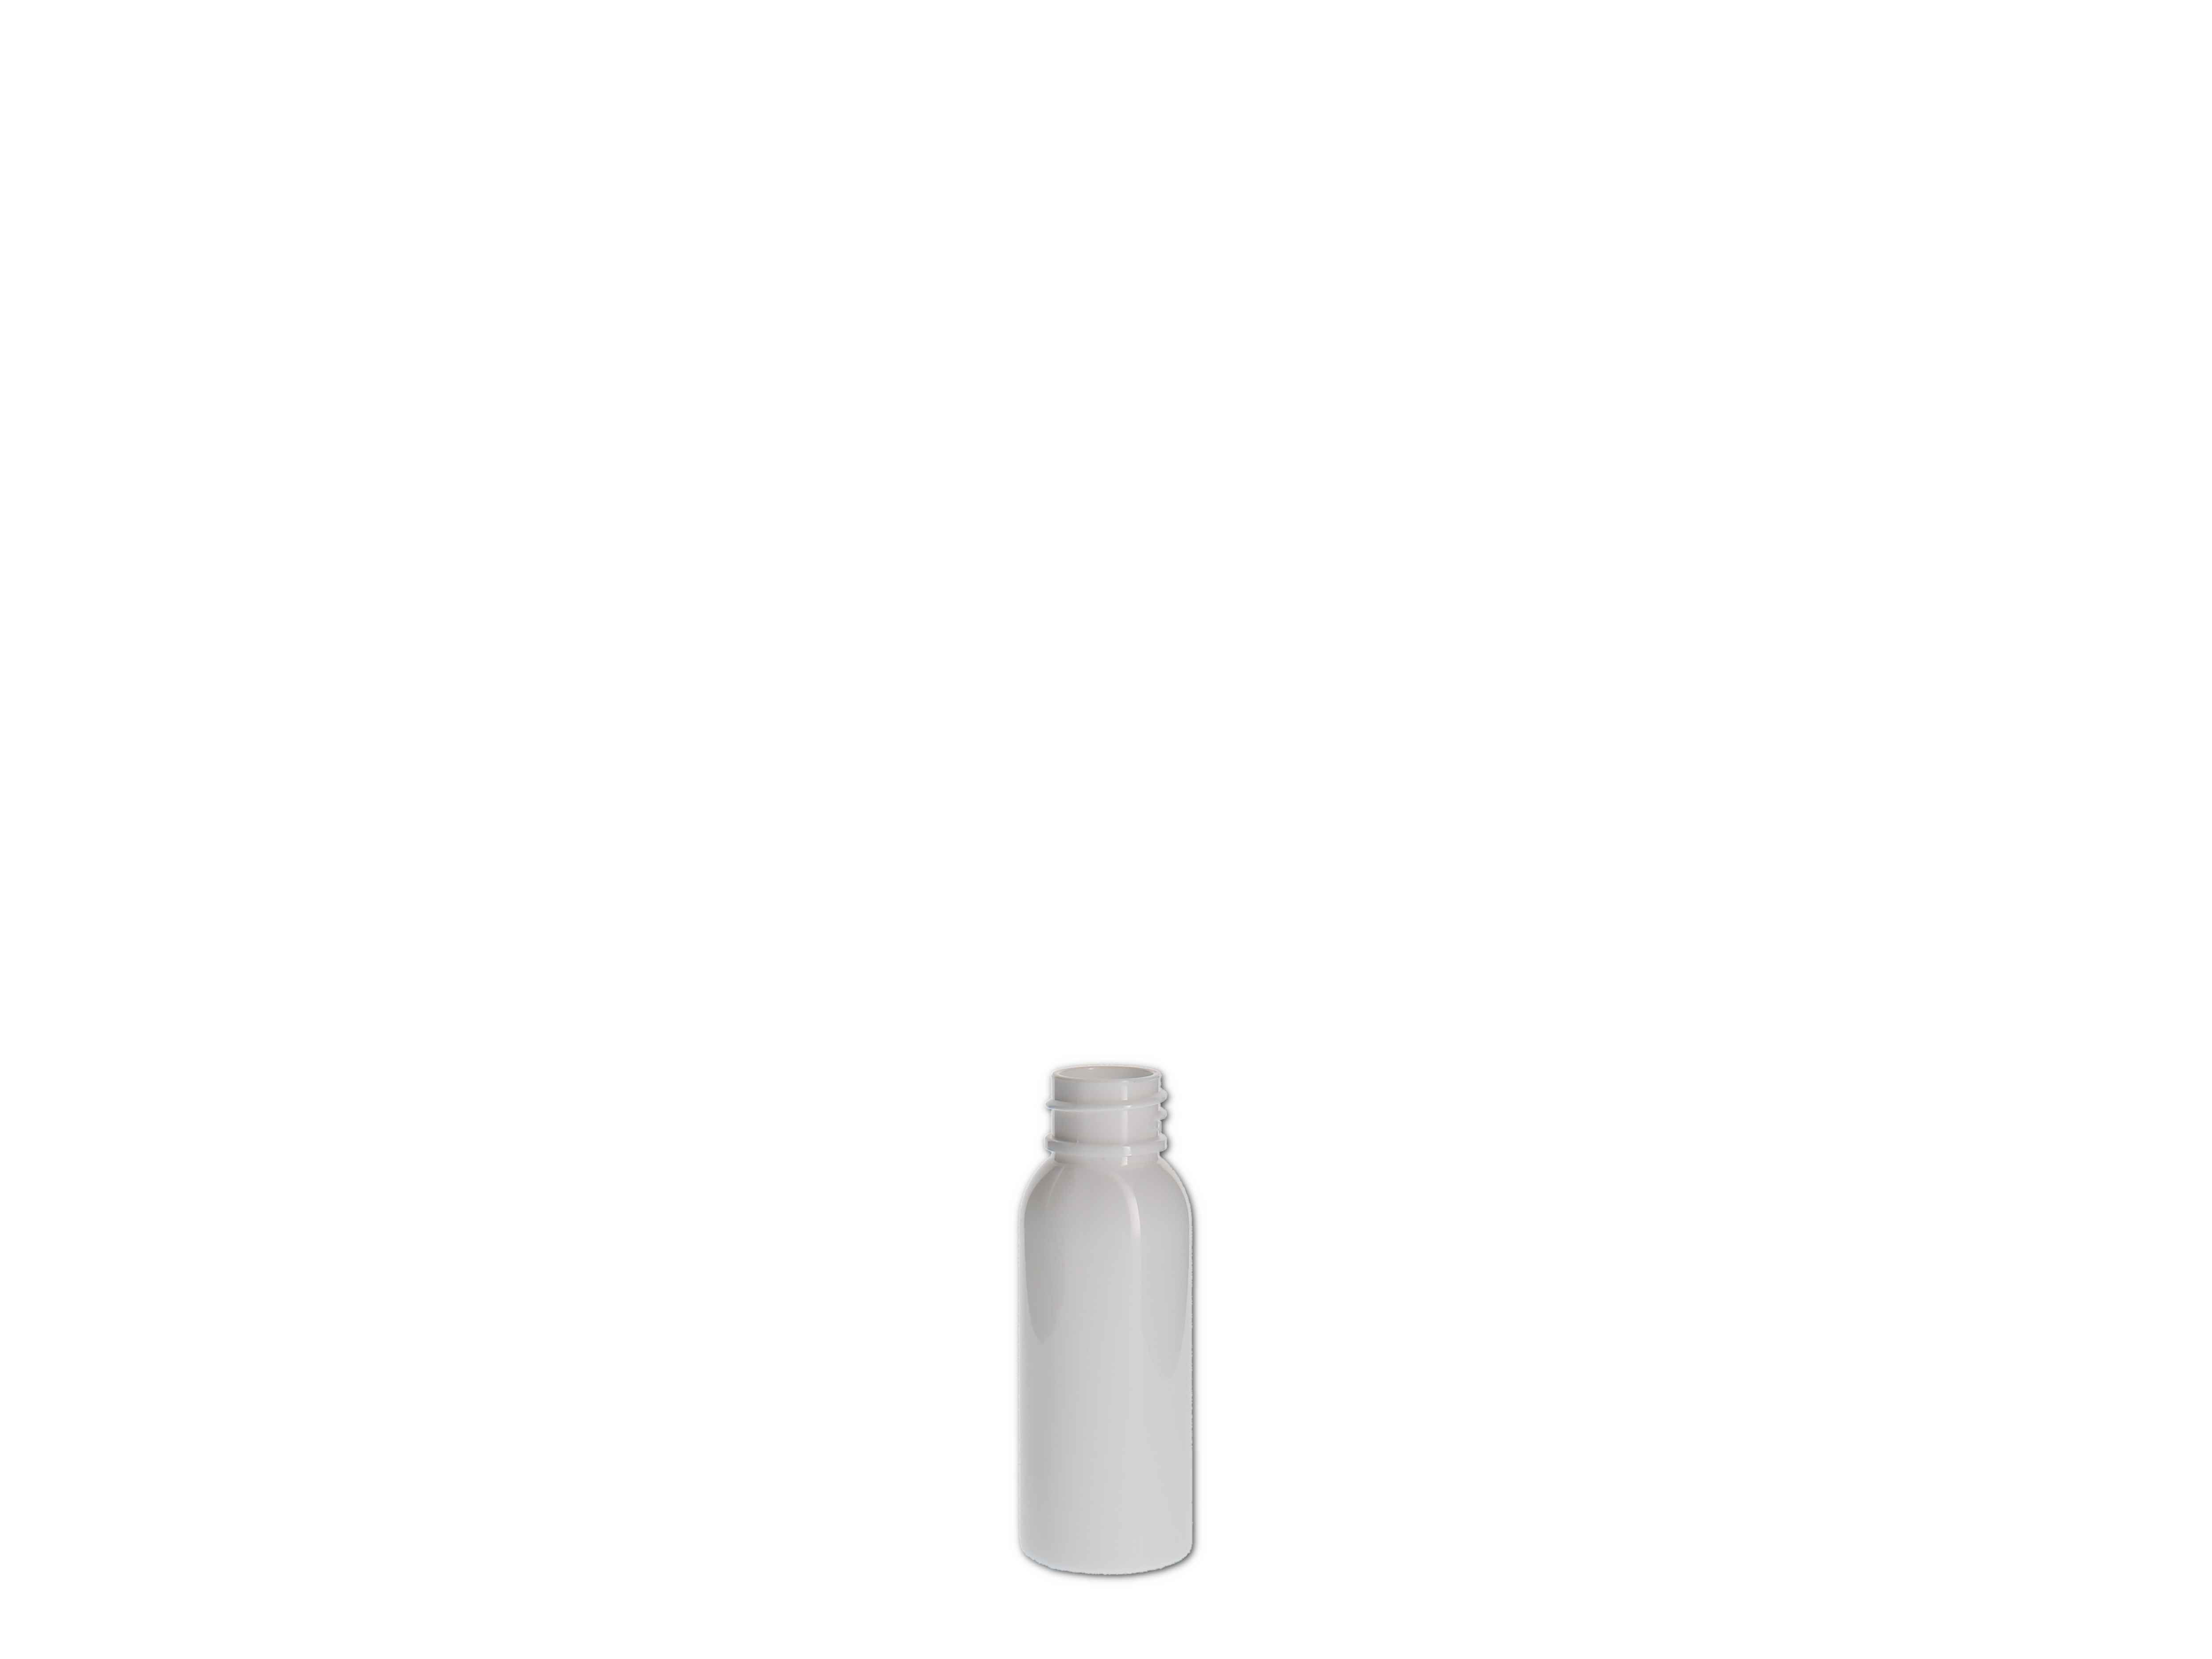    Kosmetikflasche, Kunststoff weiß, rund 30ml